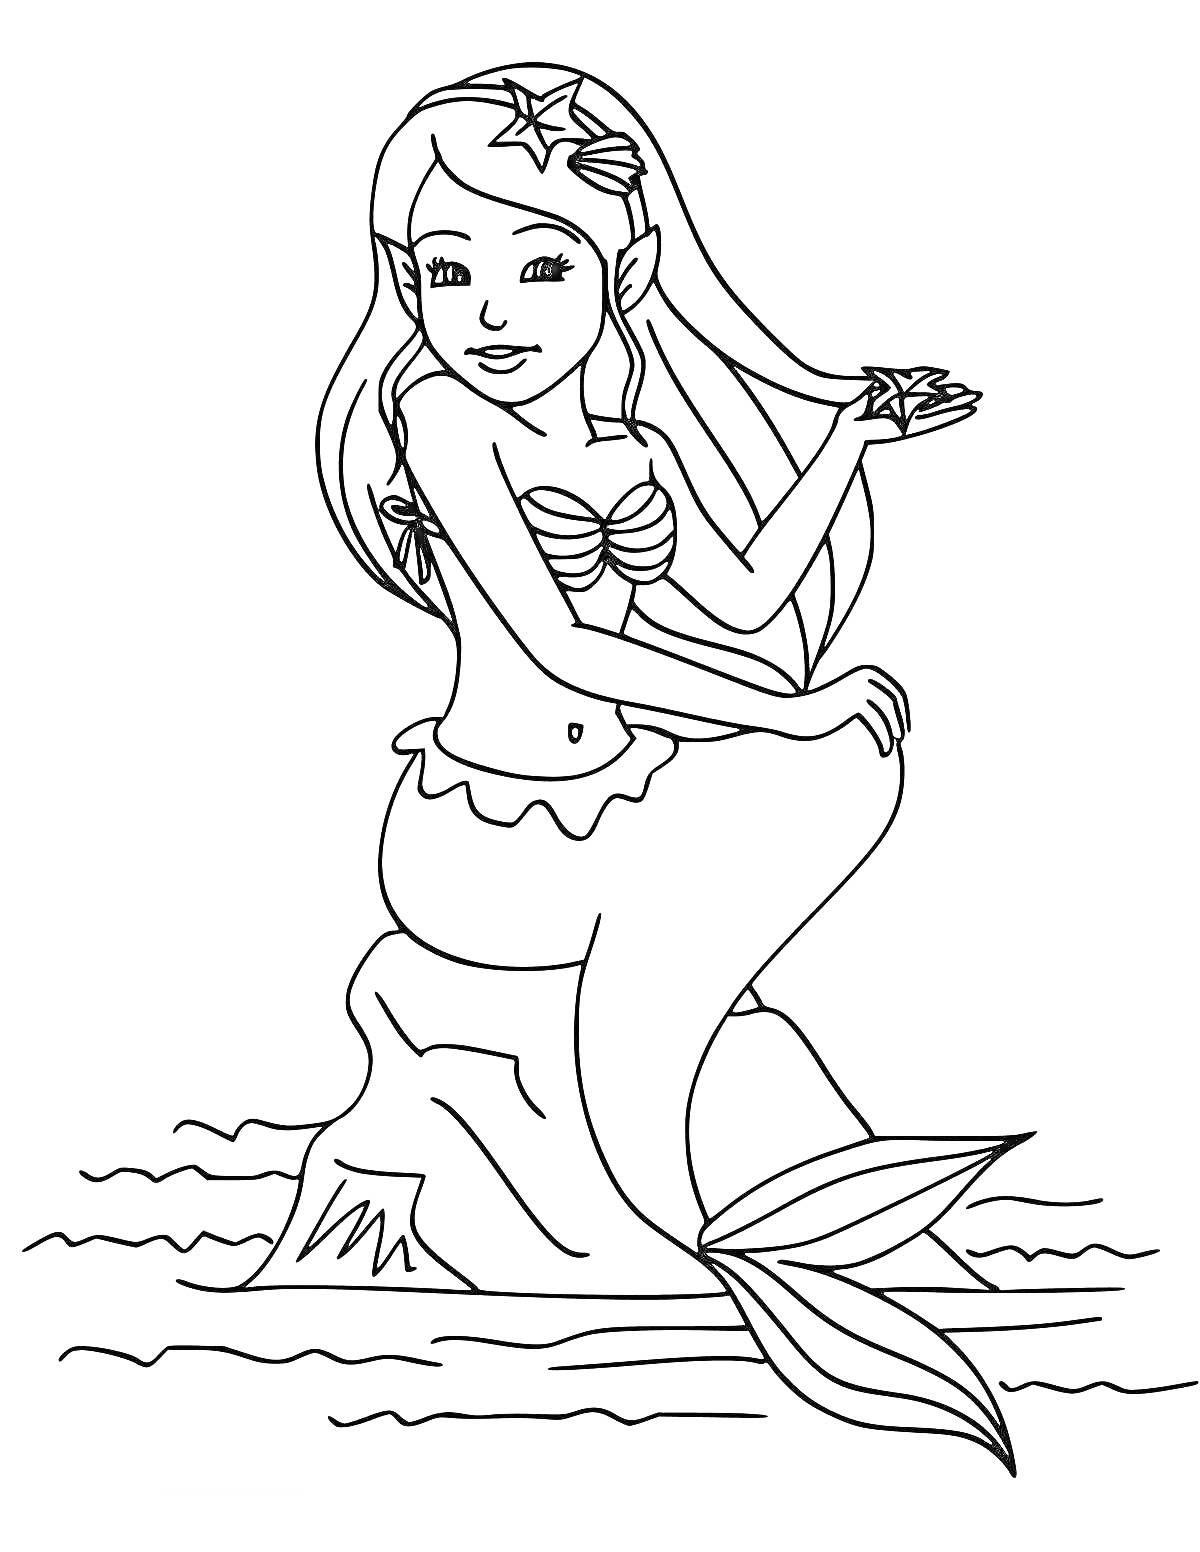 Раскраска Русалка с длинными волосами, сидящая на камне, с морской звездой в руках, в водоеме с волнами